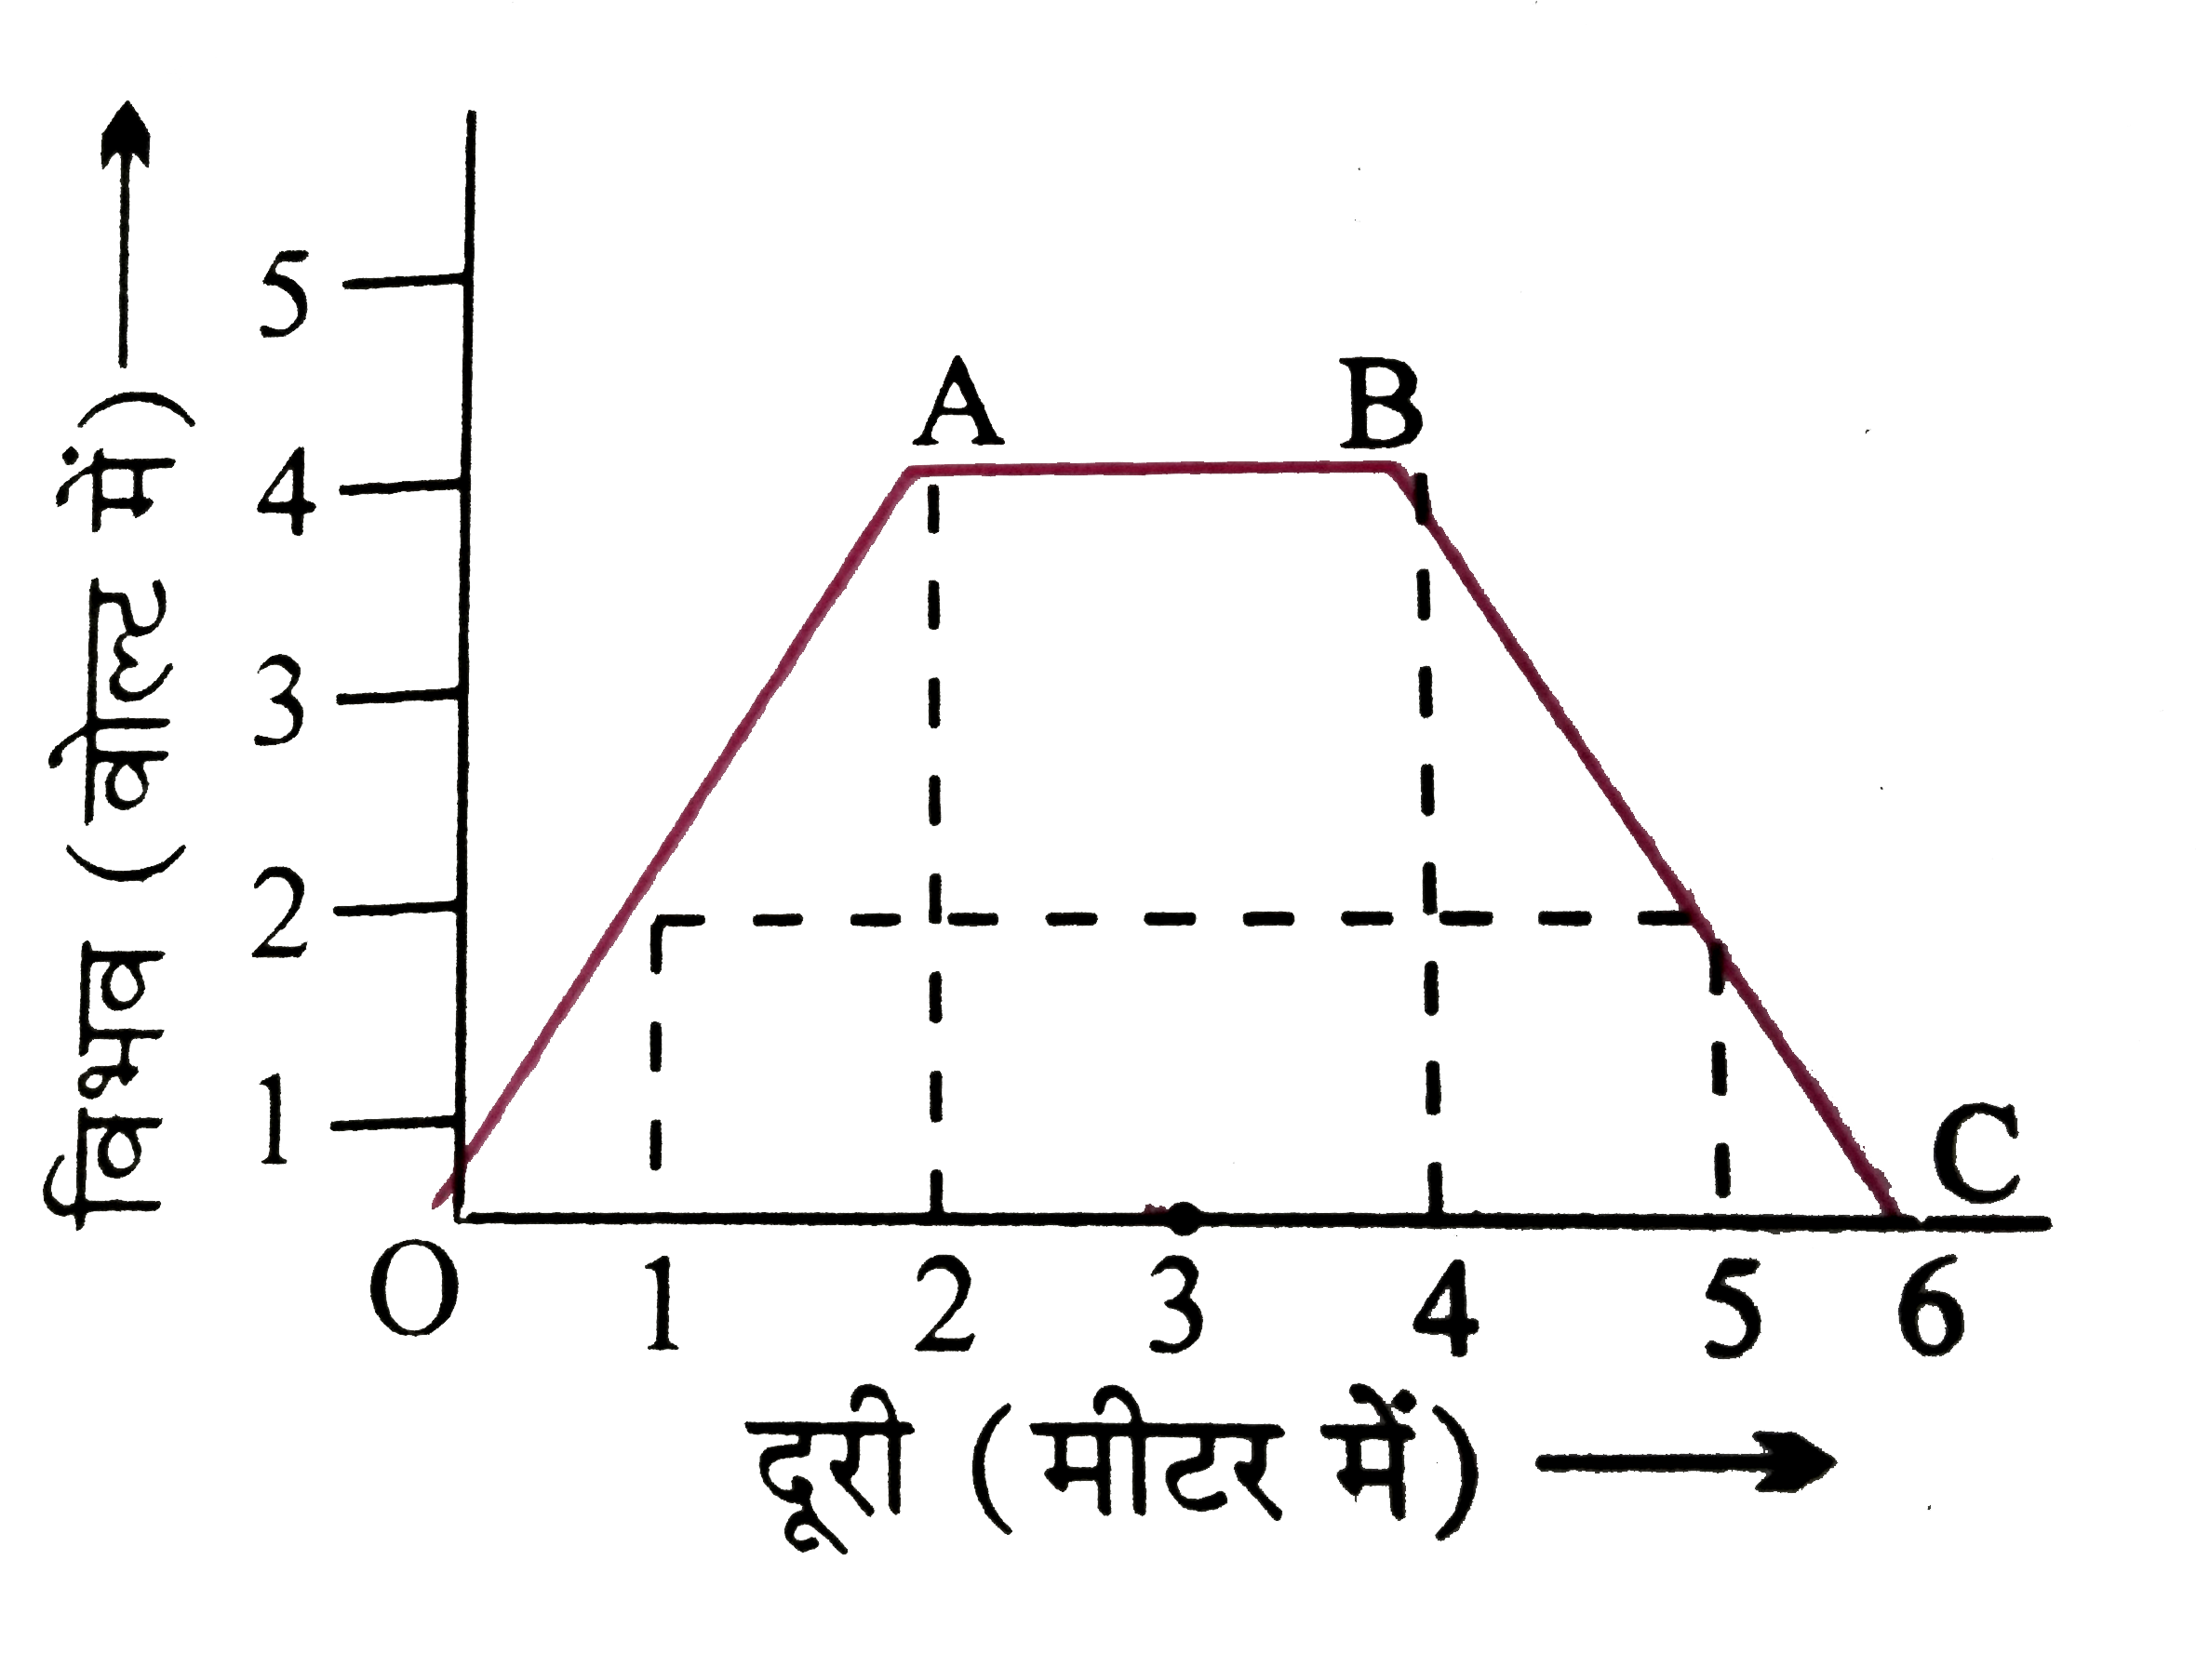 दिए गये चित्र में R = 1 मीटर , R = 3 मीटर तथा R = 5 मीटर पर विद्युत क्षेत्र की तीव्रता की गणना कीजिए |